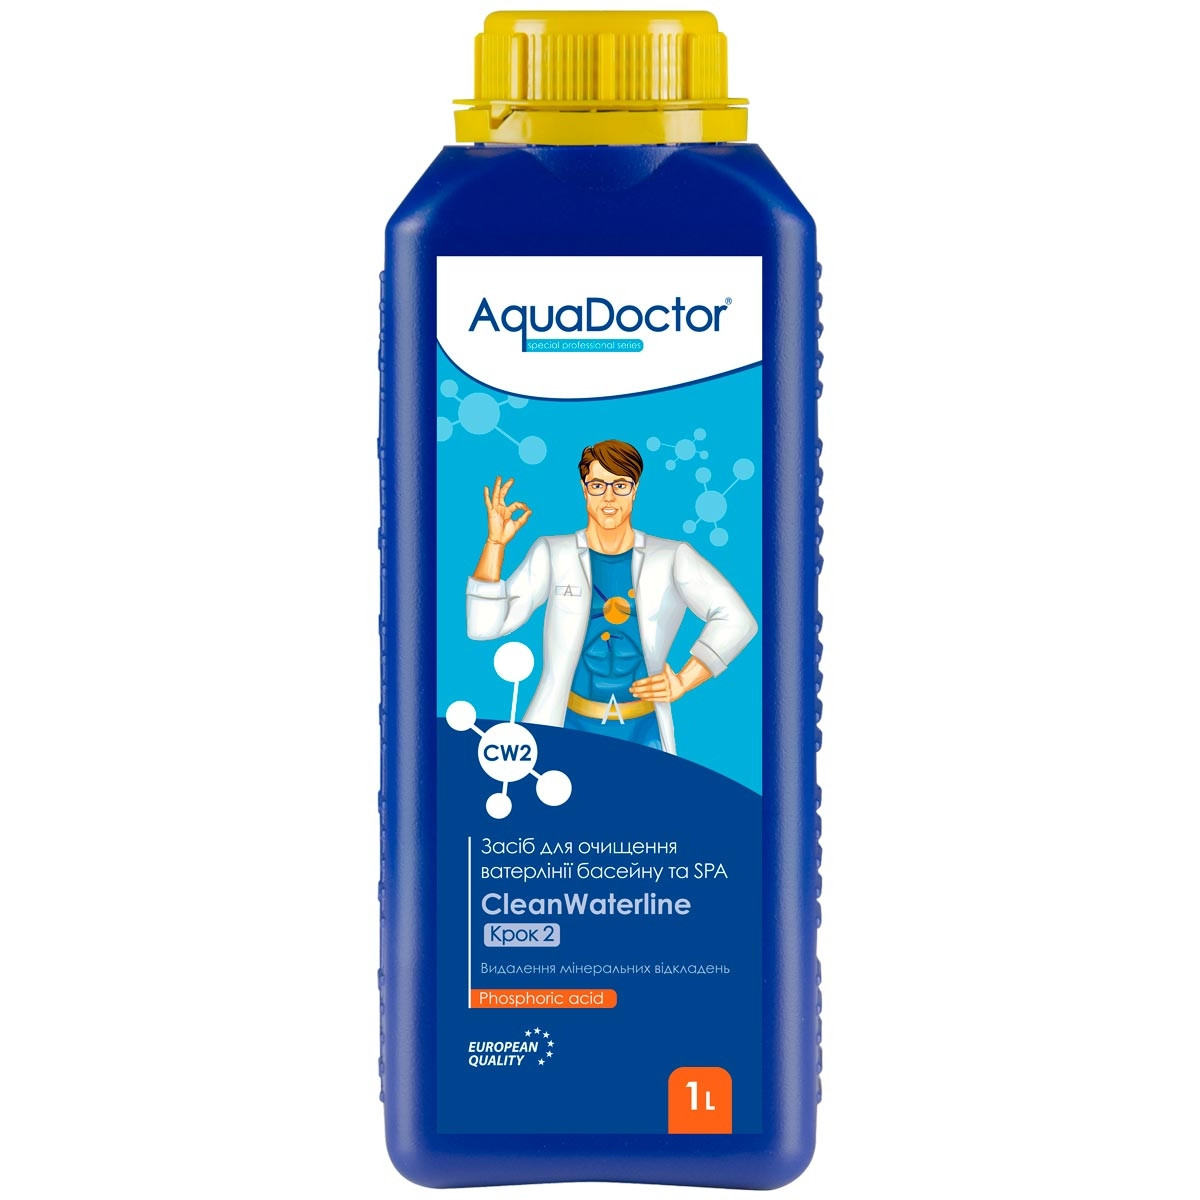 AquaDoctor Засіб для очищення ватерлінії басейну і СПА AquaDoctor CW CleanWaterline Крок 2